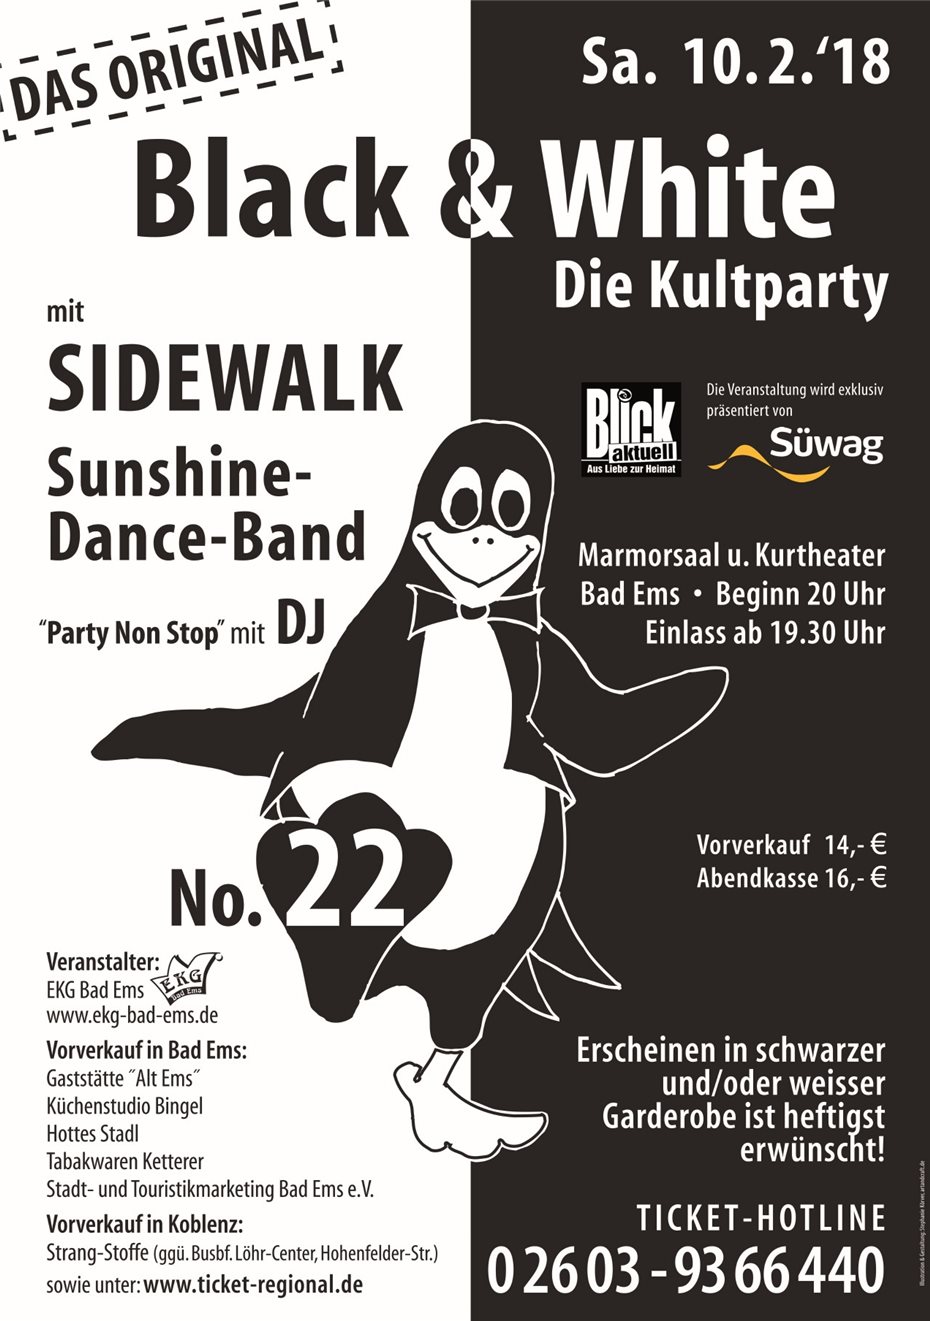 Partystimmung pur bei der Kultparty Black & White -